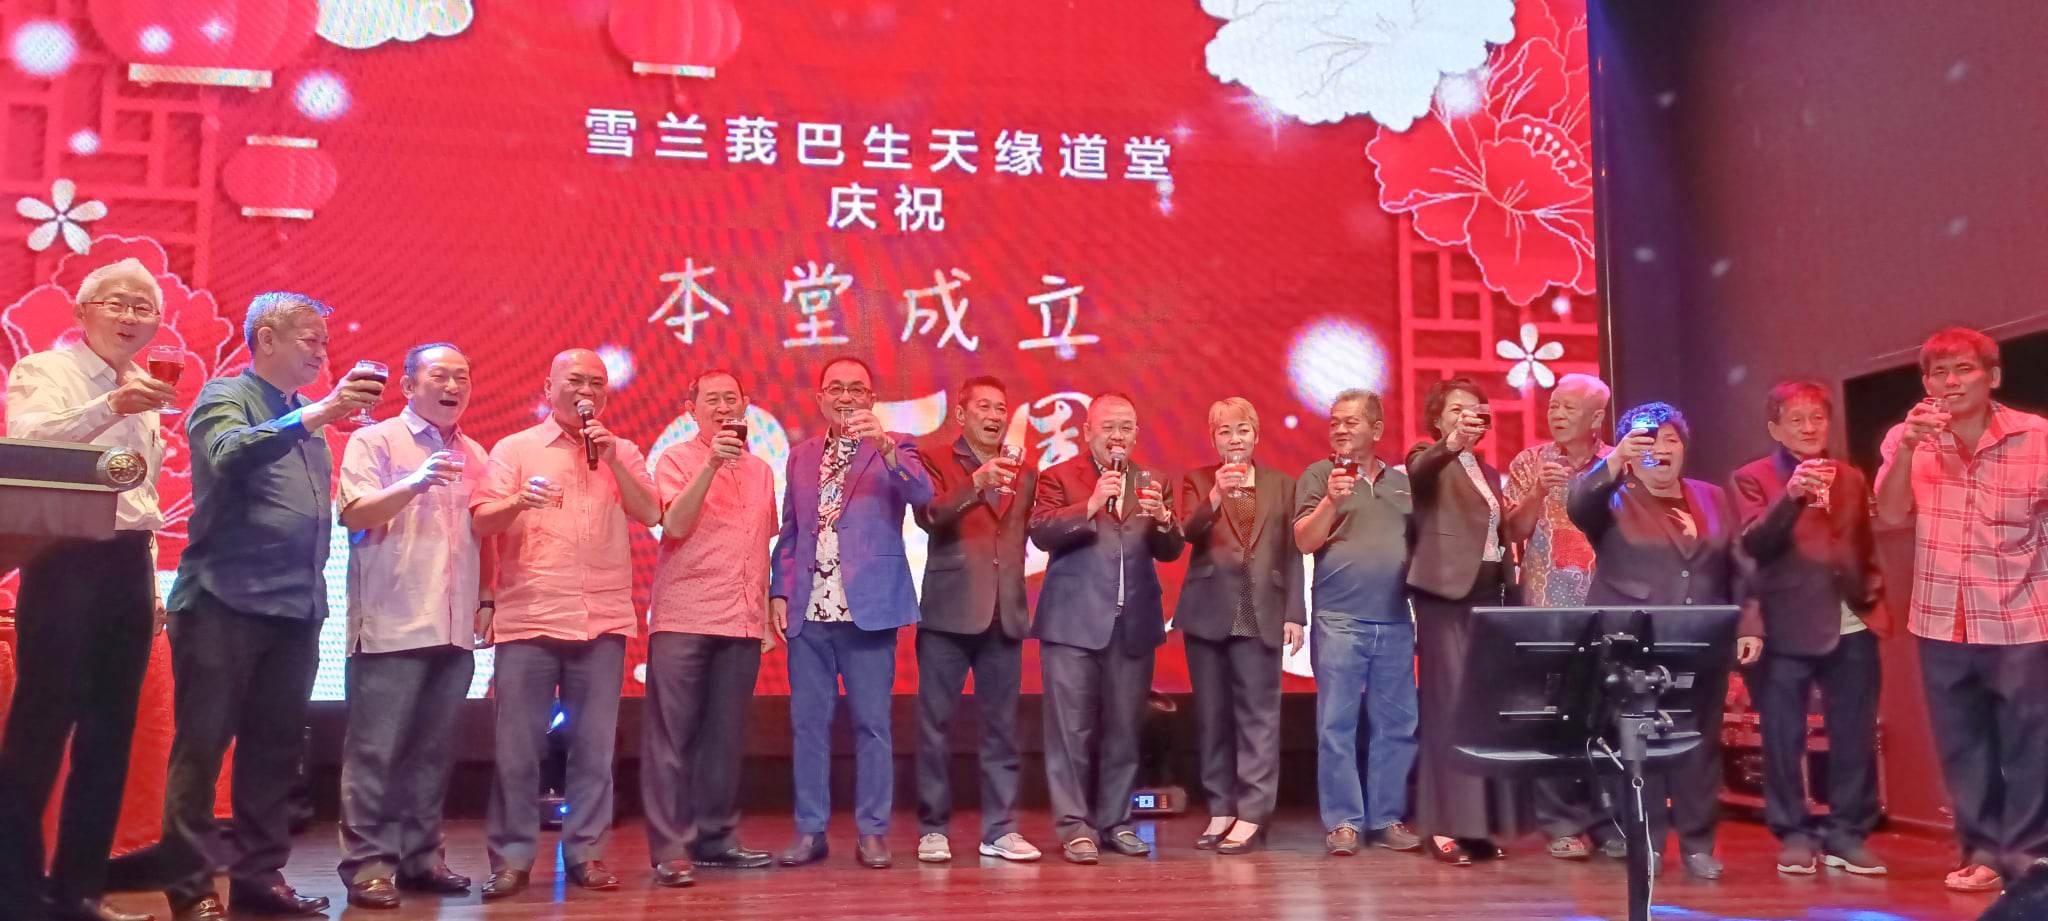 （副文）大都会：刘天球说州议会解散，他即退出行动党